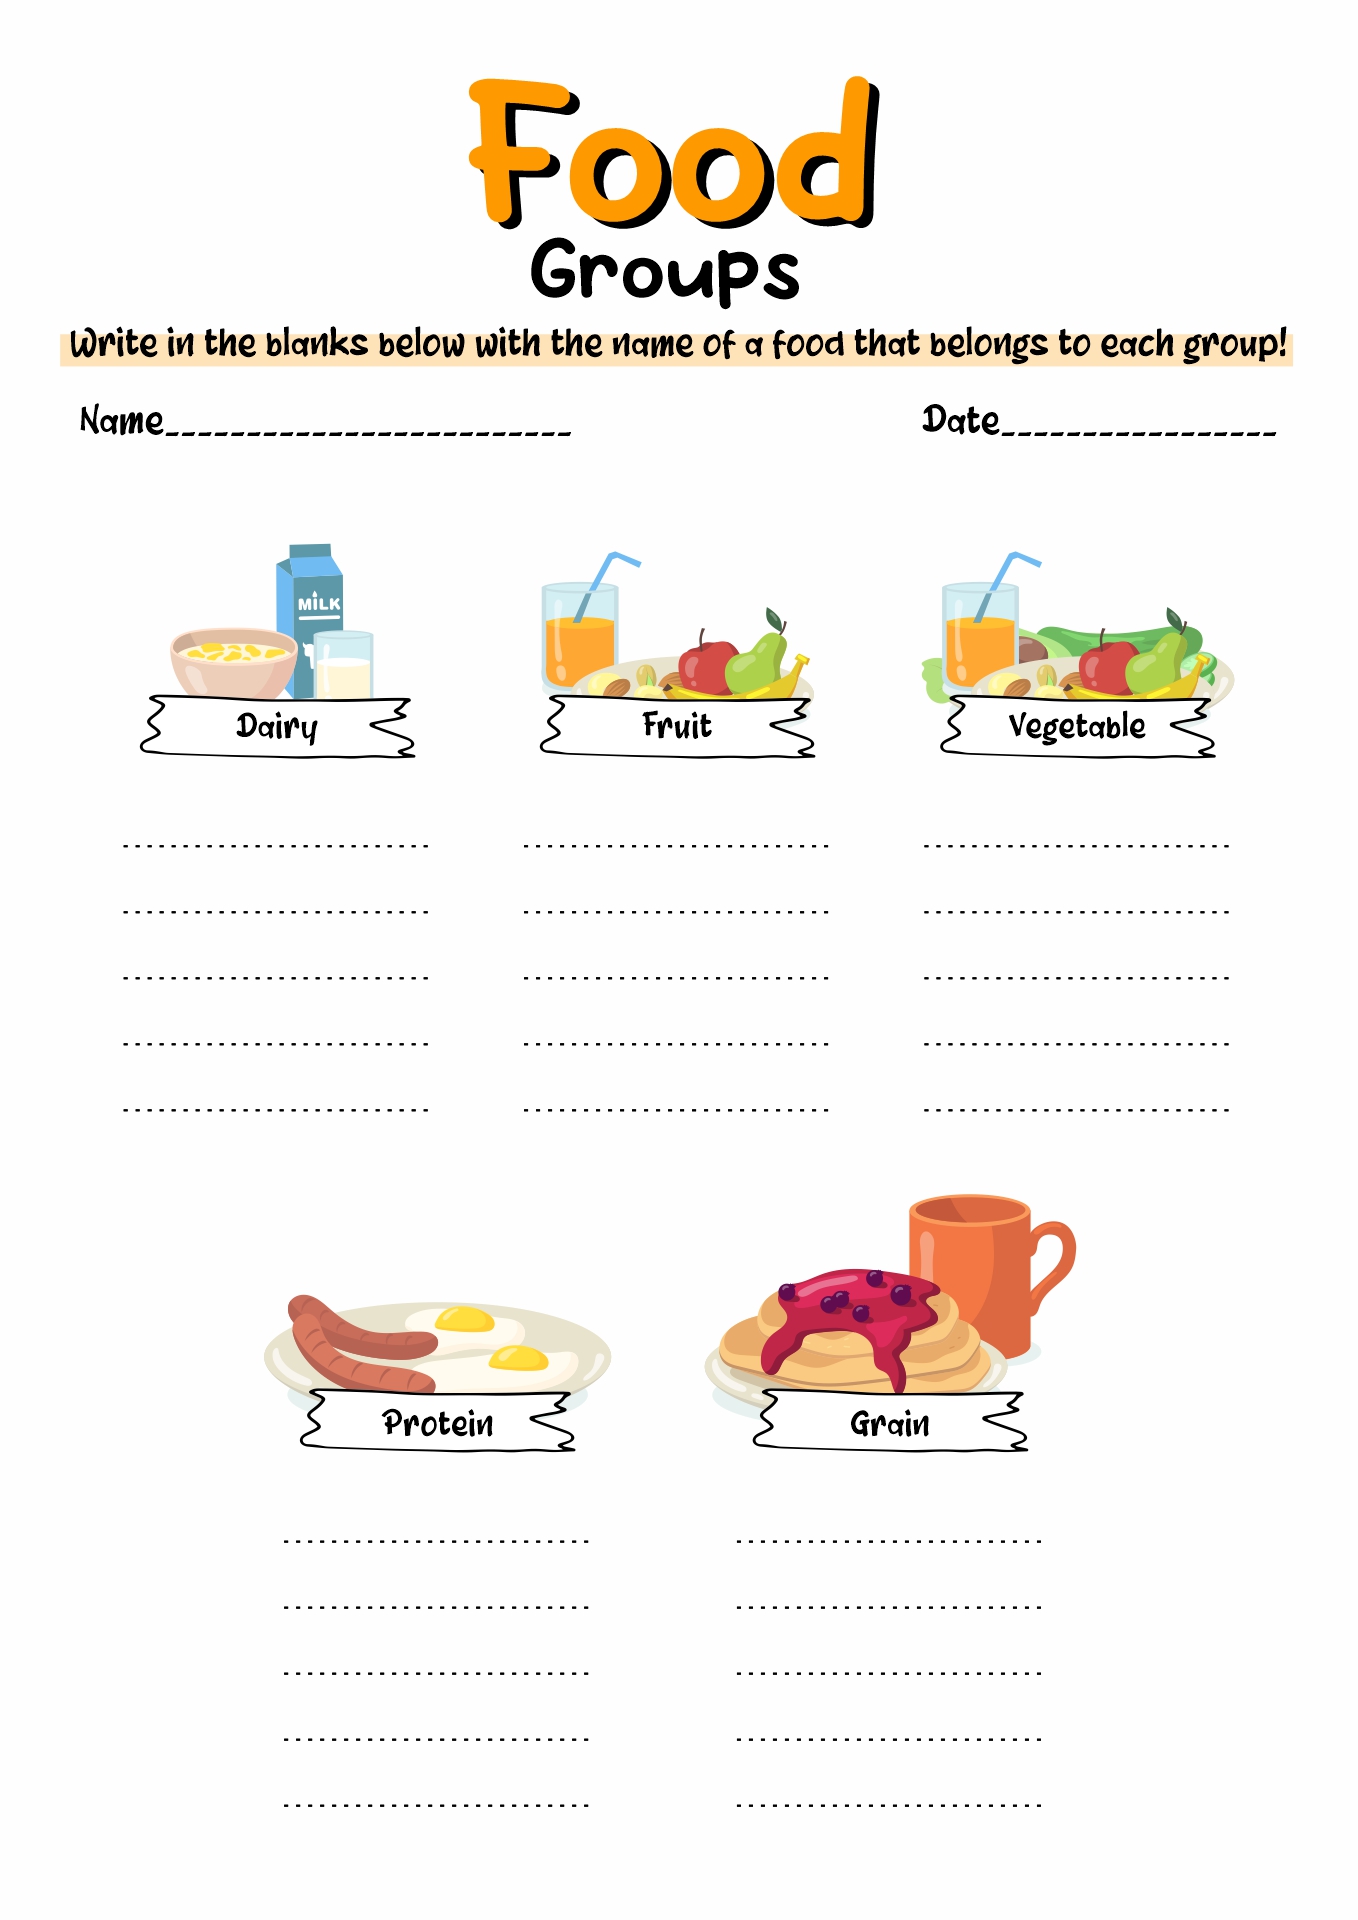 https://www.worksheeto.com/postpic/2011/02/printable-food-groups-worksheets_172127.jpg